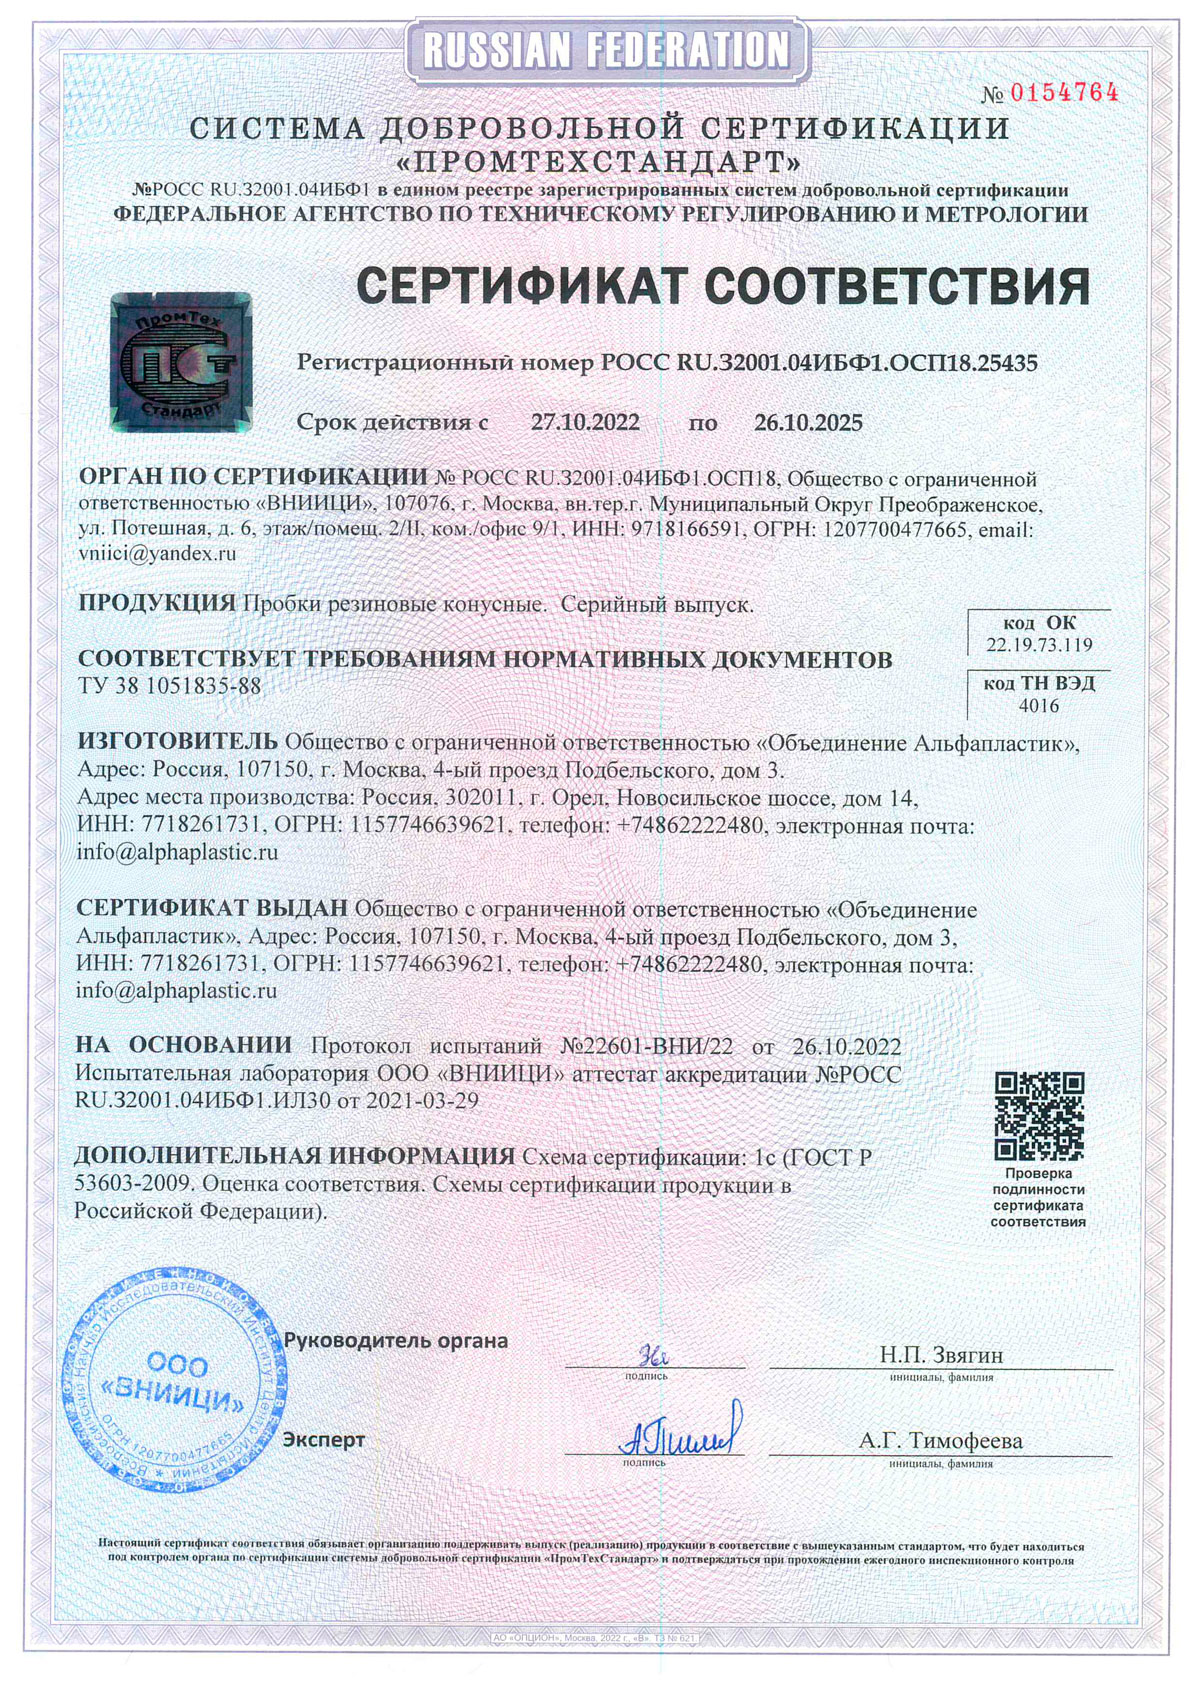 Пробки резиновые конусные. Объединение Альфапластик. Сертификат до 26.10.2025